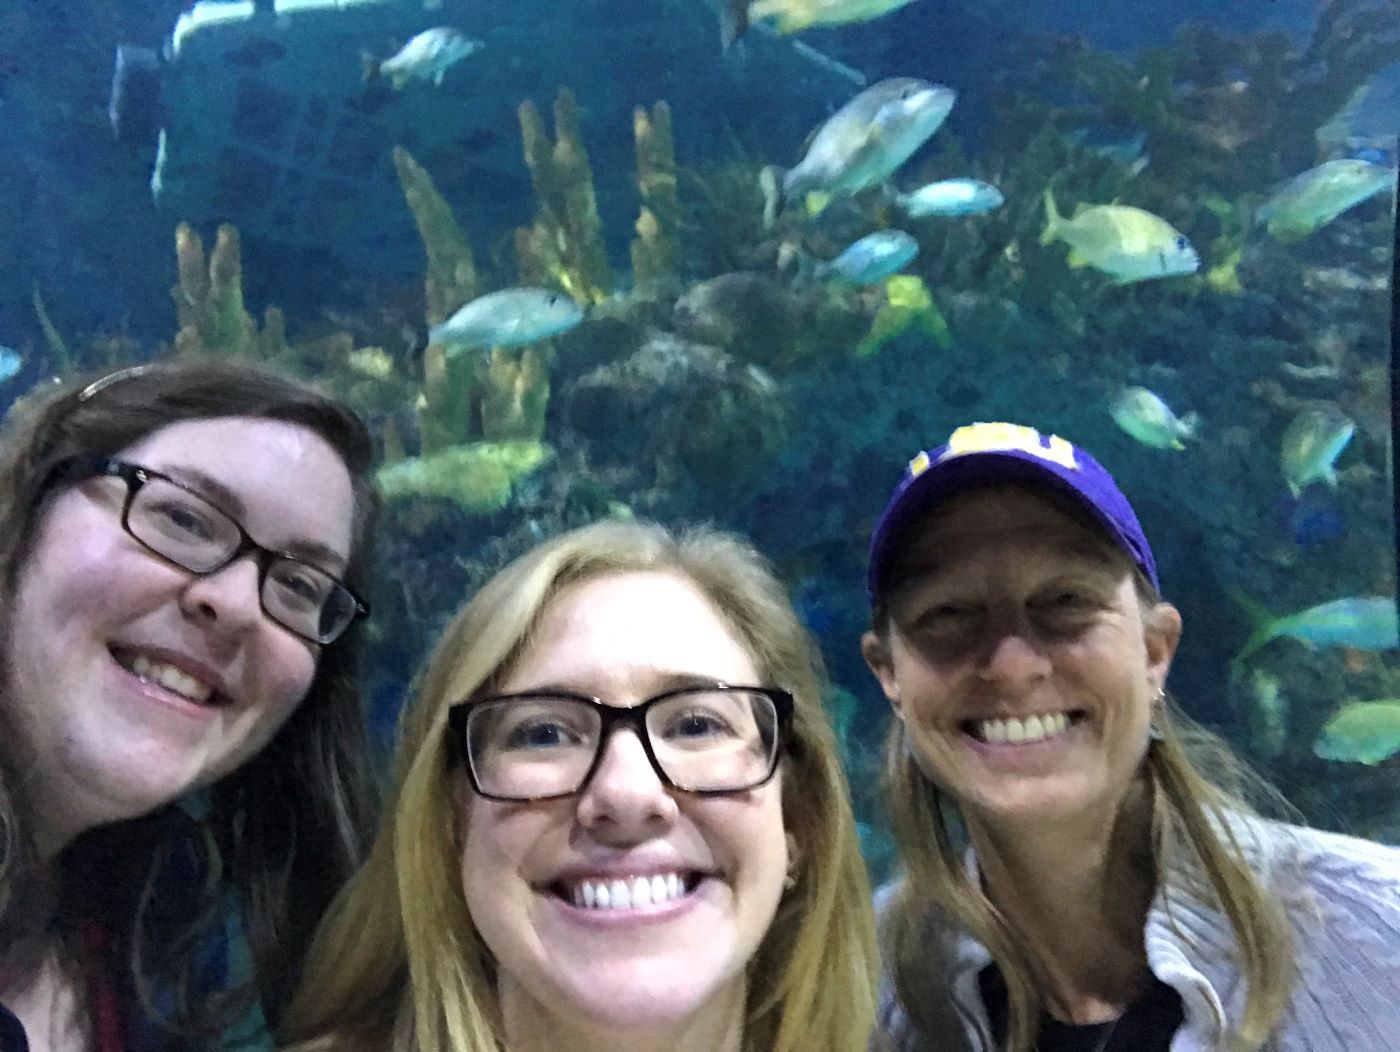 Karen, Karen Jr., and Julie at the New Orleans aquarium